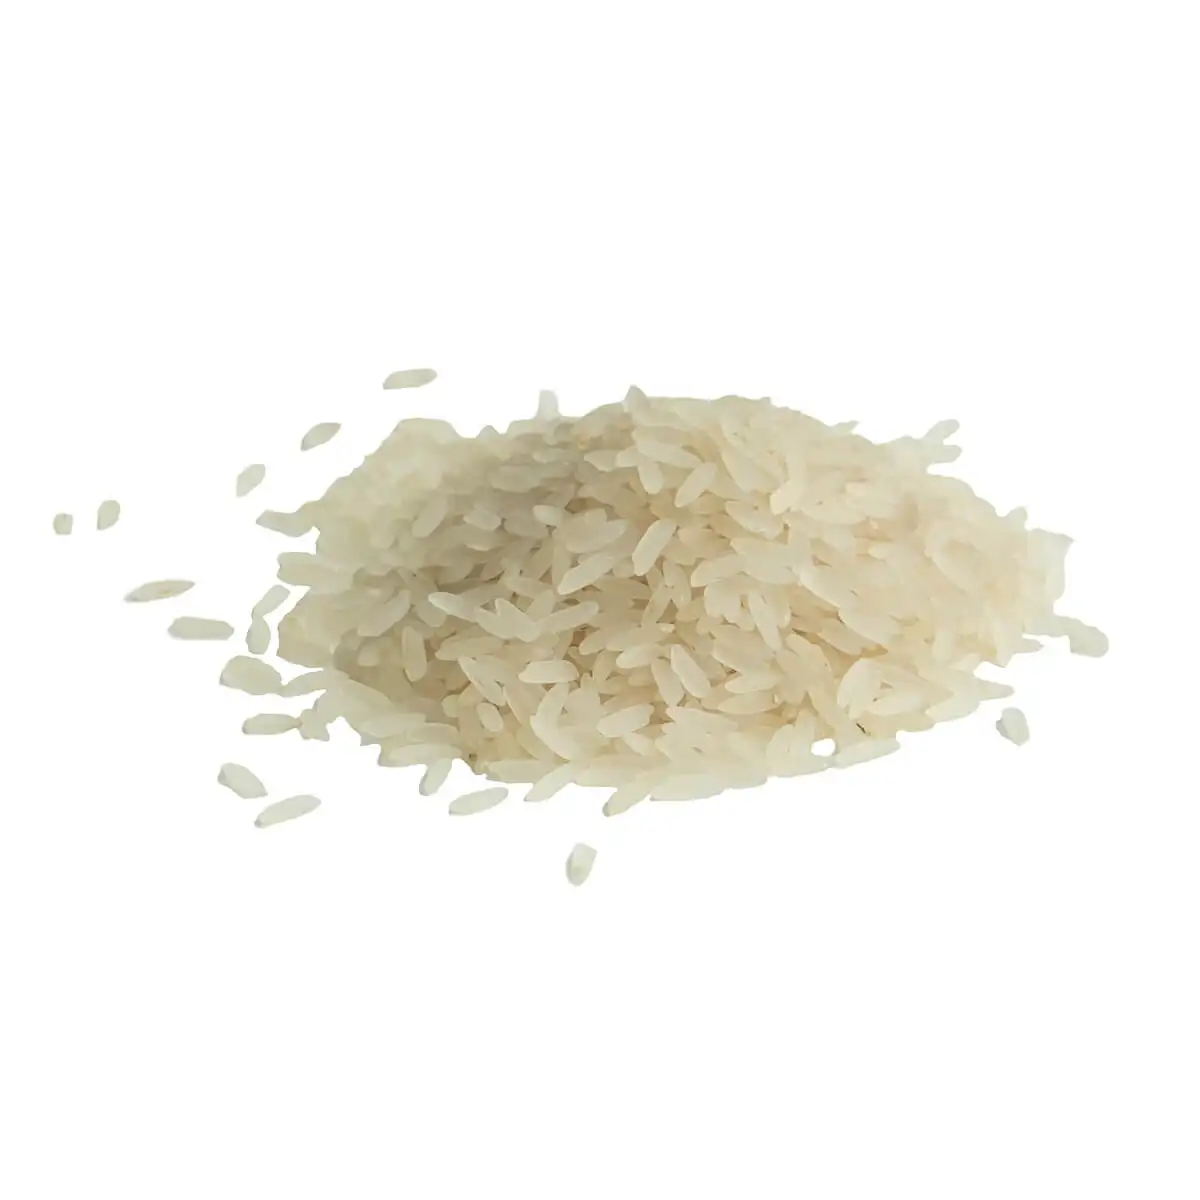 Длиннозерновой 1121 риса басмати/Pusa пар, экспортеры риса басмати/качественный рис басмати